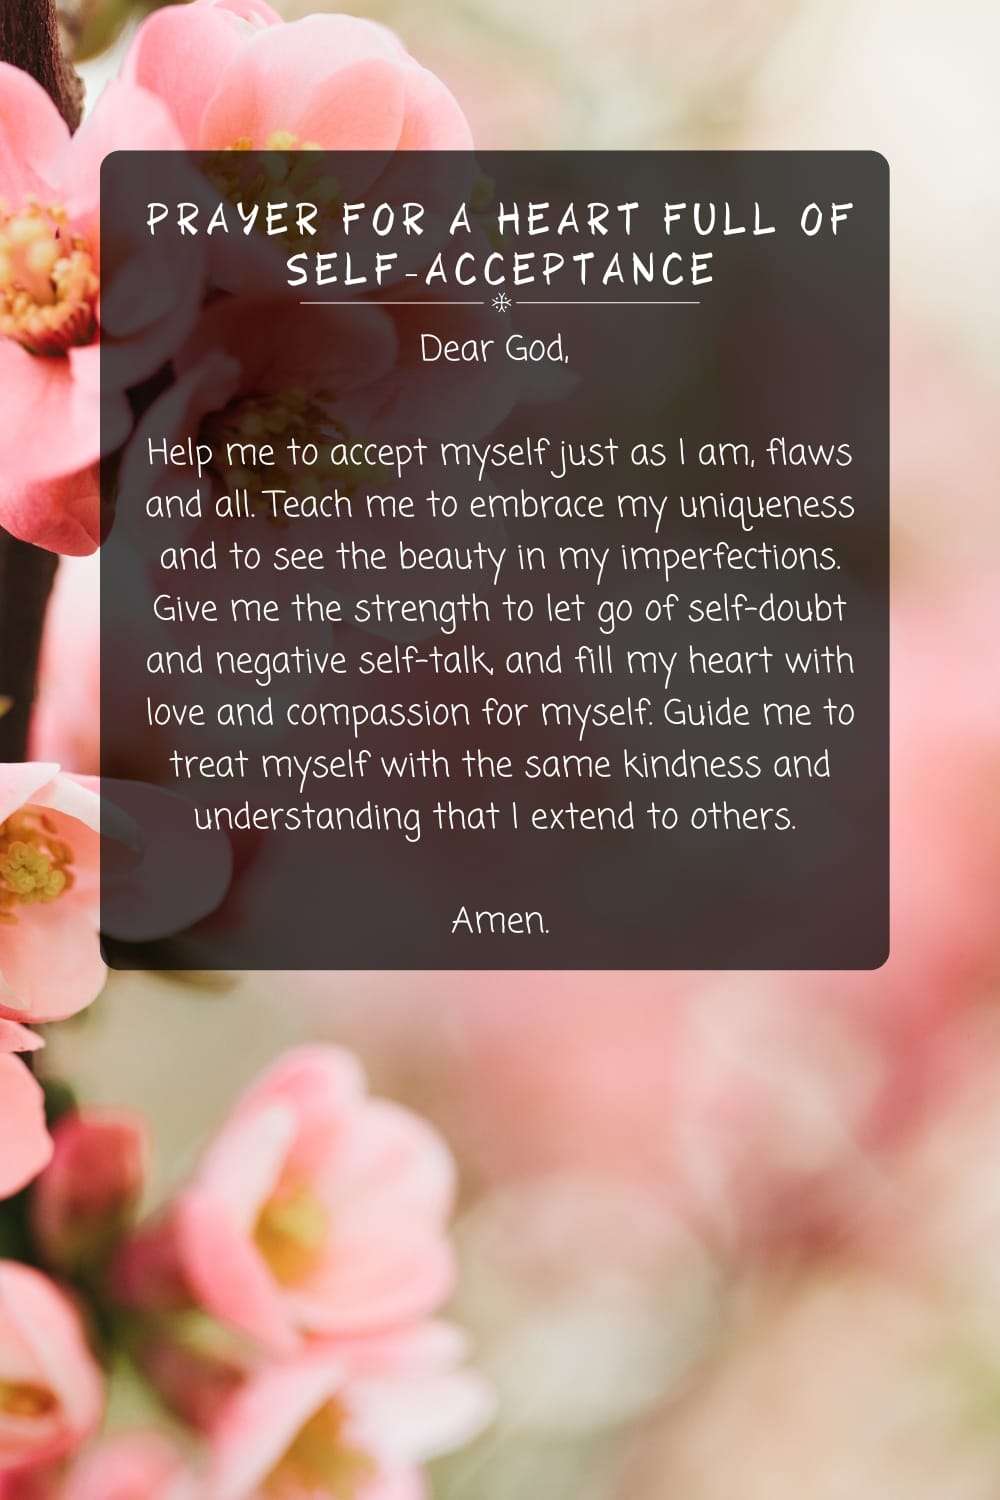 Prayer for a Heart Full of Self-AcceptancePrayer for a Heart Full of Self-Acceptance